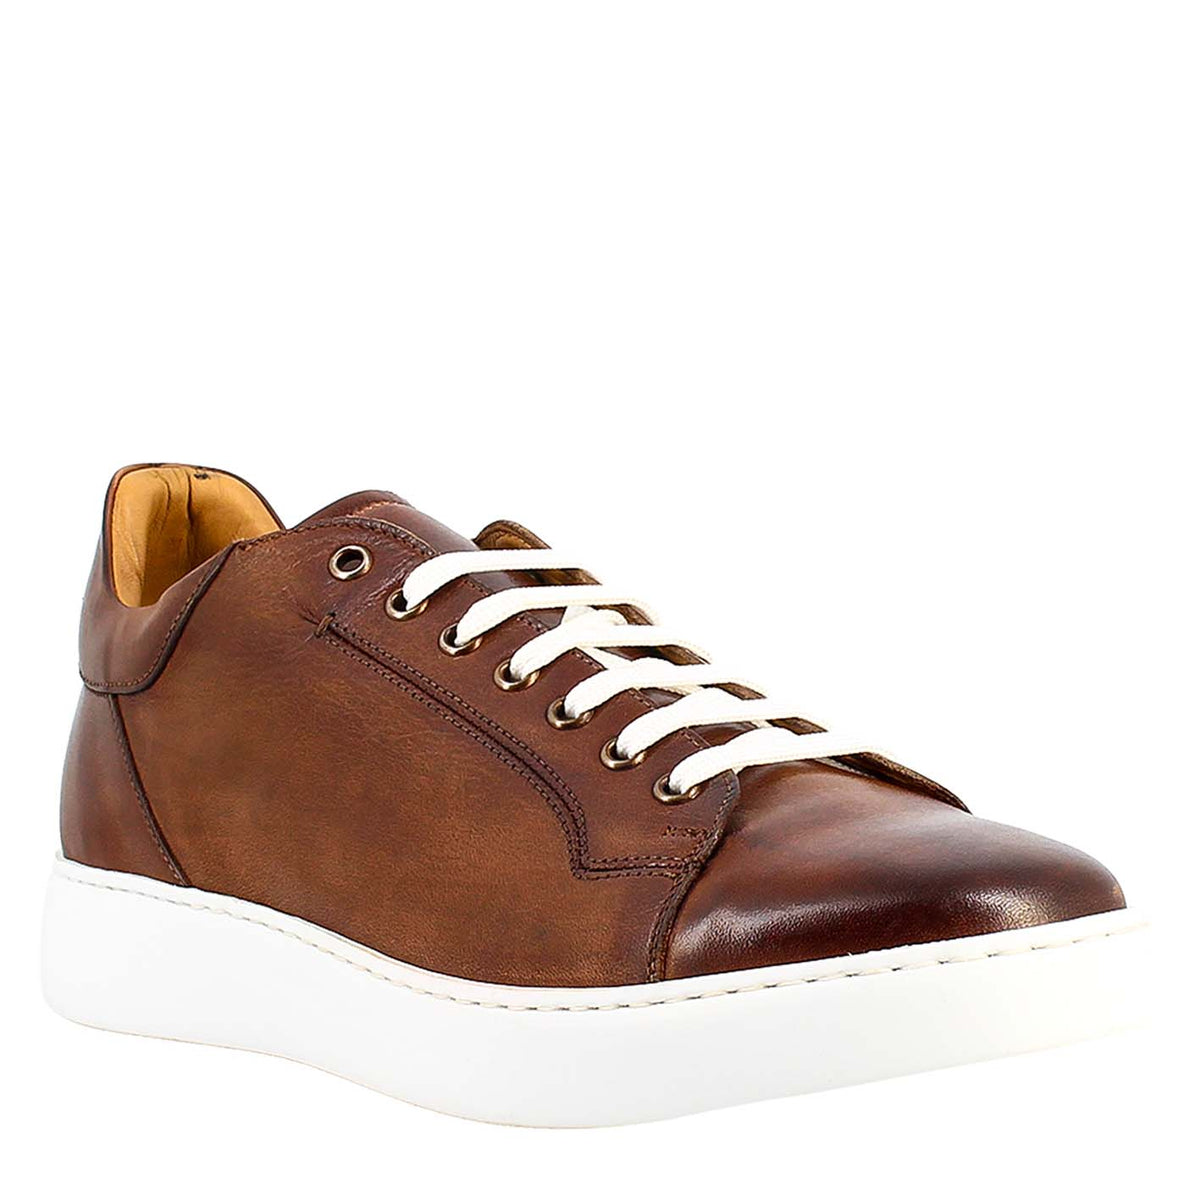 Elegant men's brown sneaker in smooth leather